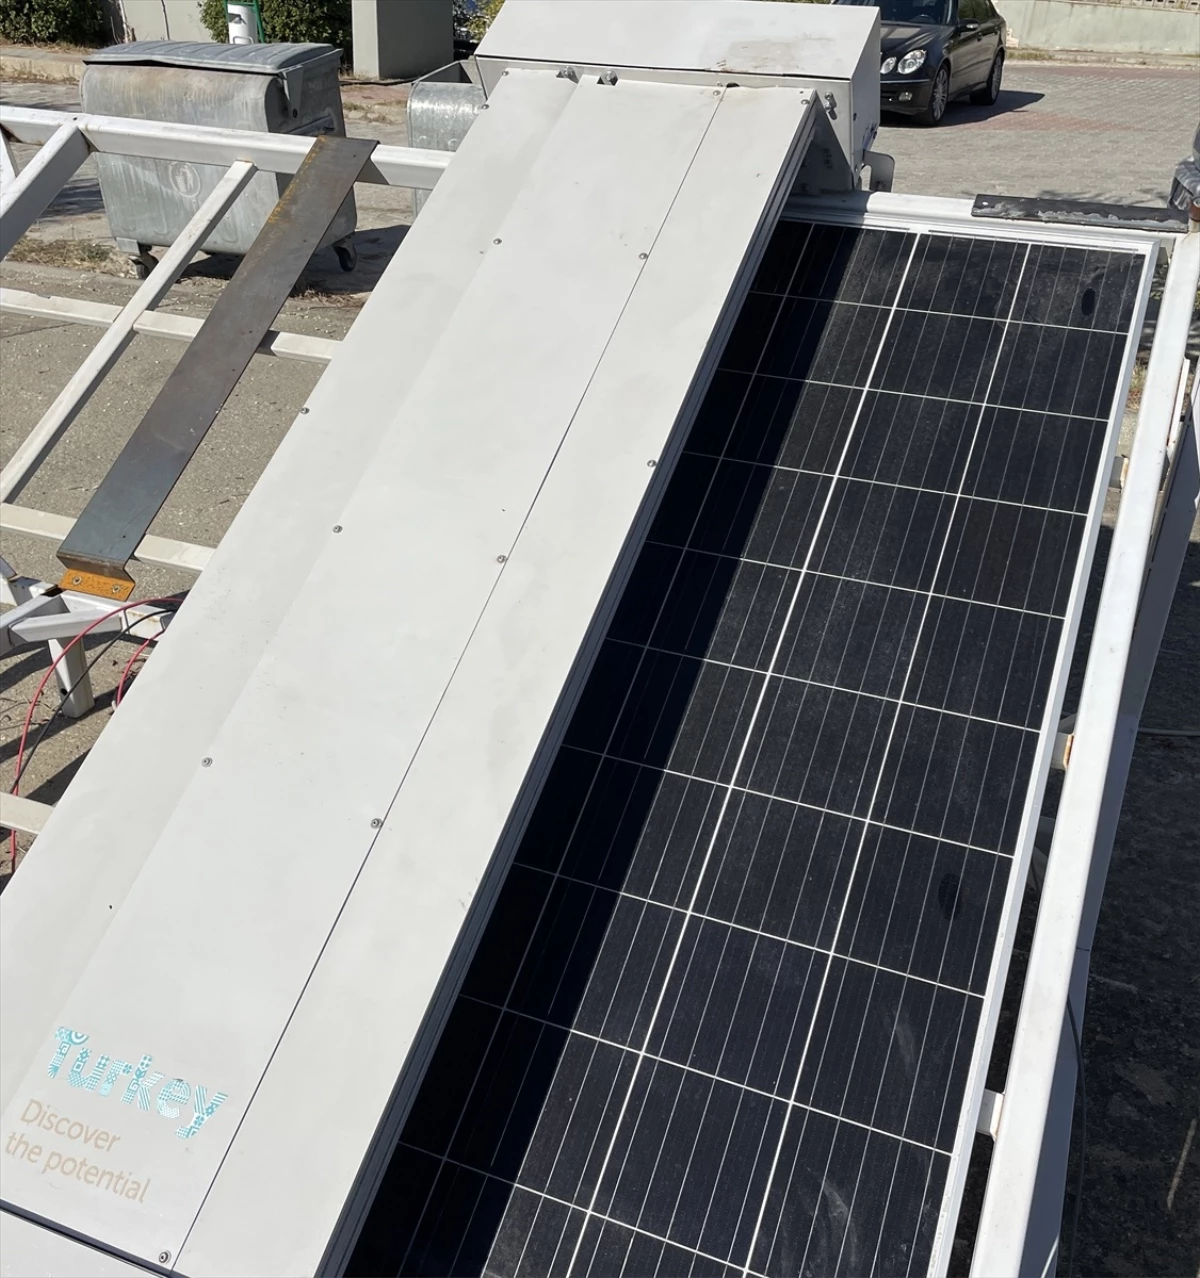 Trakya Üniversitesi, Güneş Enerjisi Panellerini Temizleyen Otomatik Cihaz Üretti